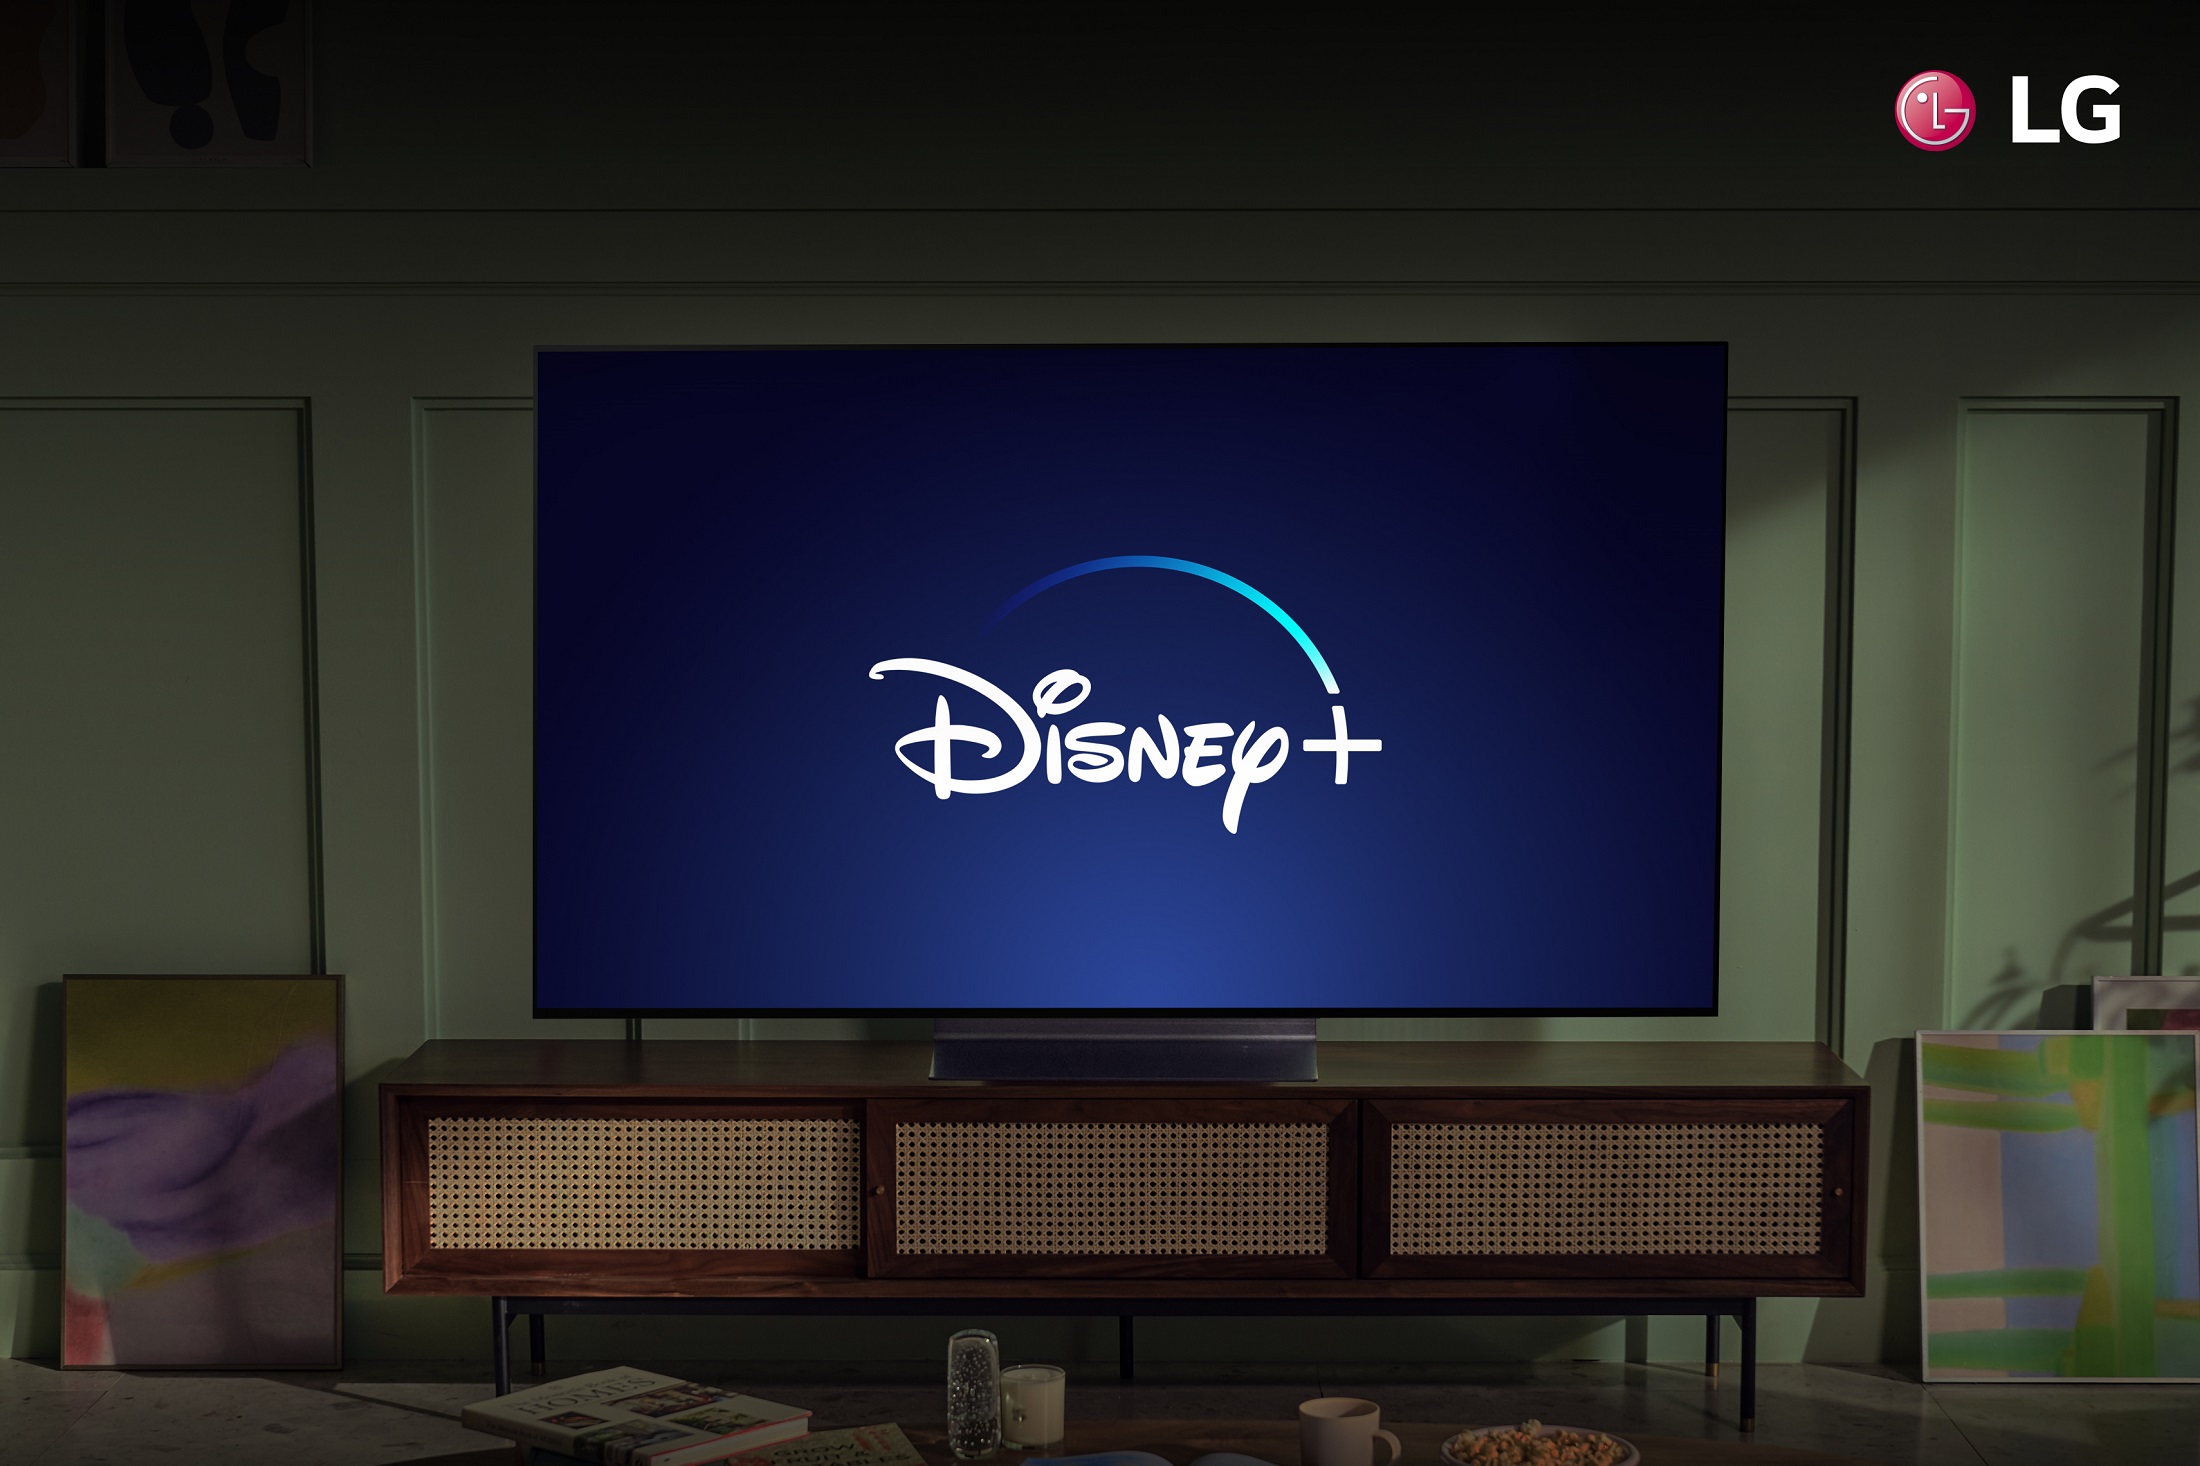 Disney+ در تلویزیون های سازگار LG در کشورهای بیشتر موجود است